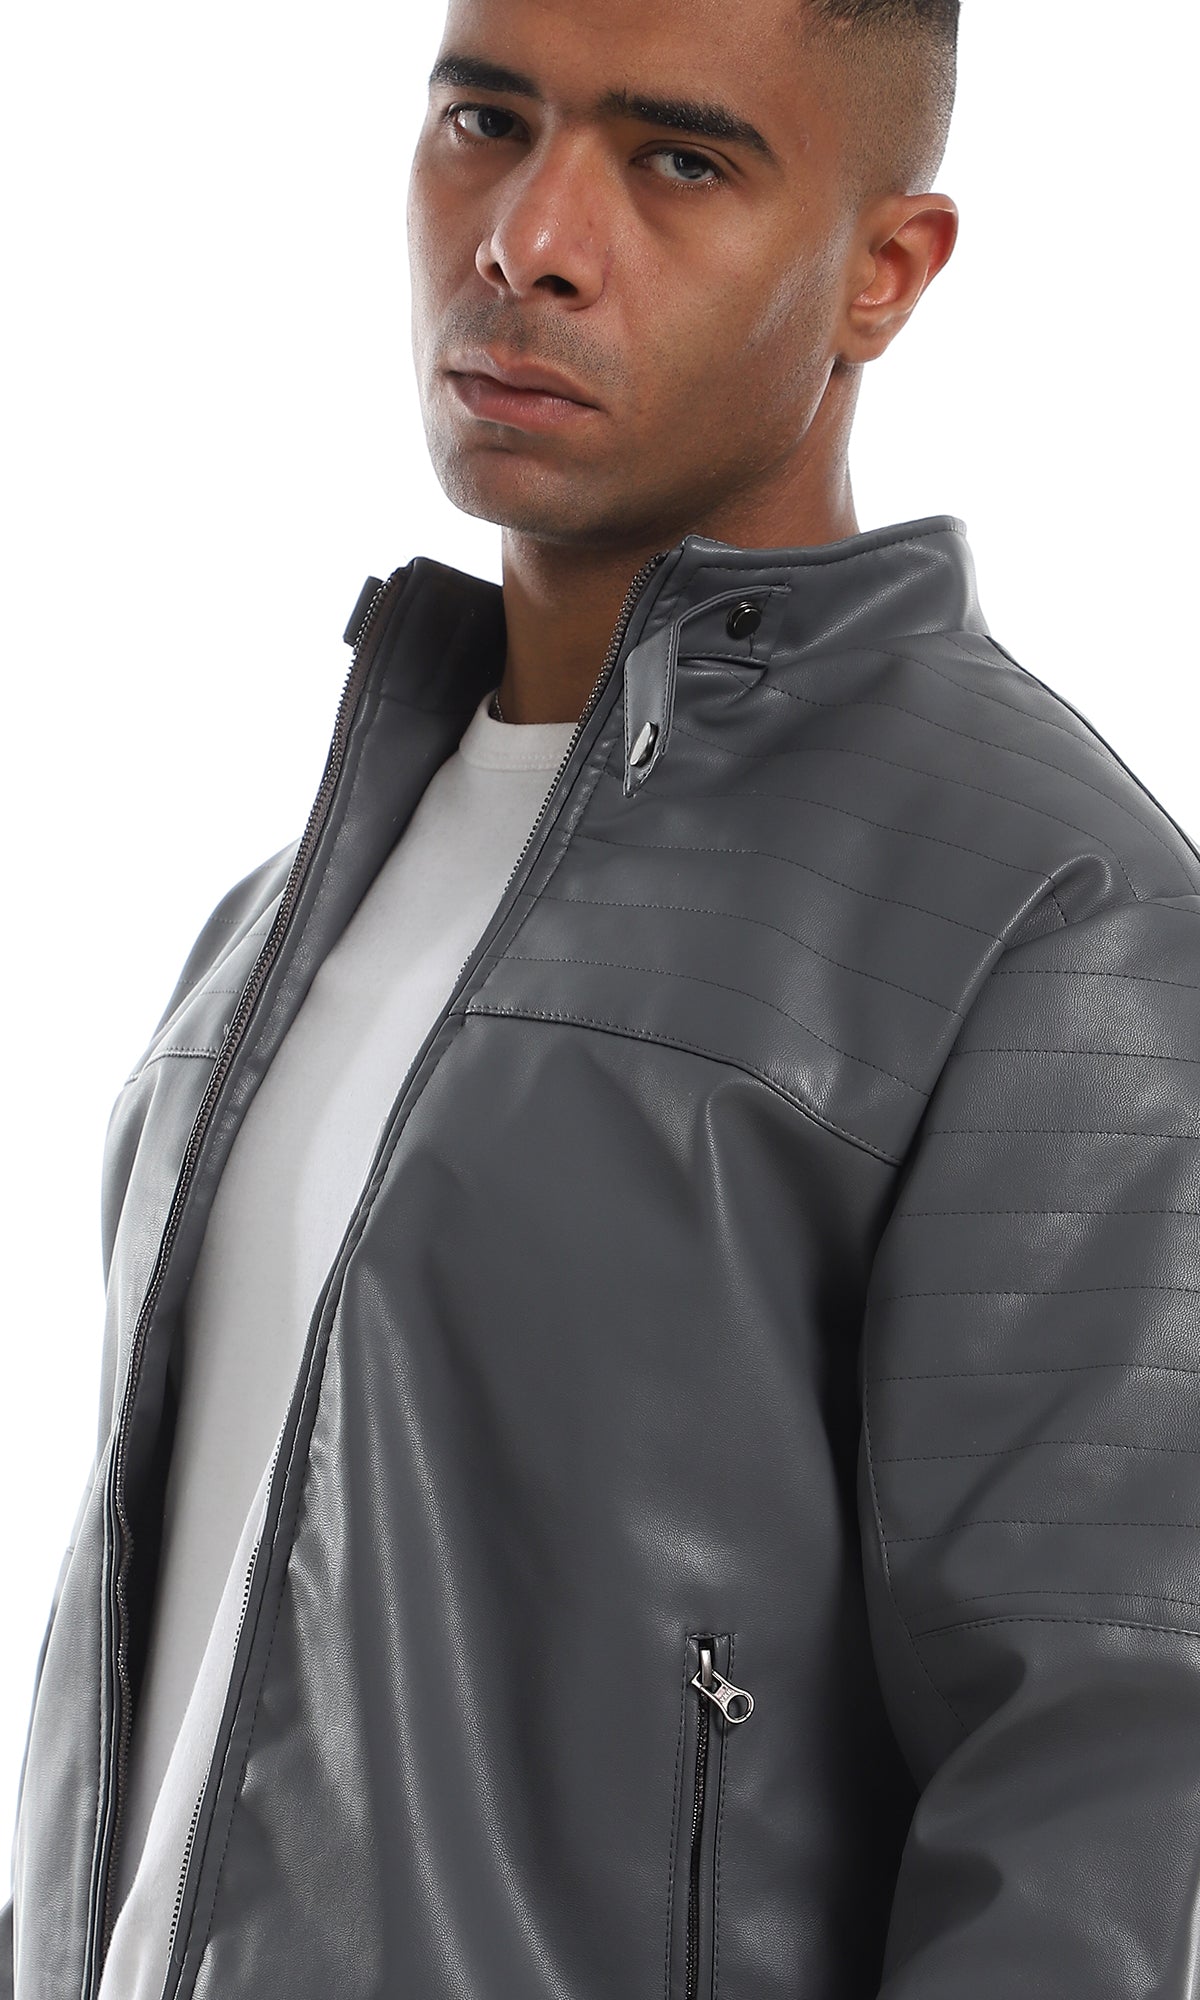 O156166 2 Side Zipper Pocket Stitched Details Grey Leather Jacket